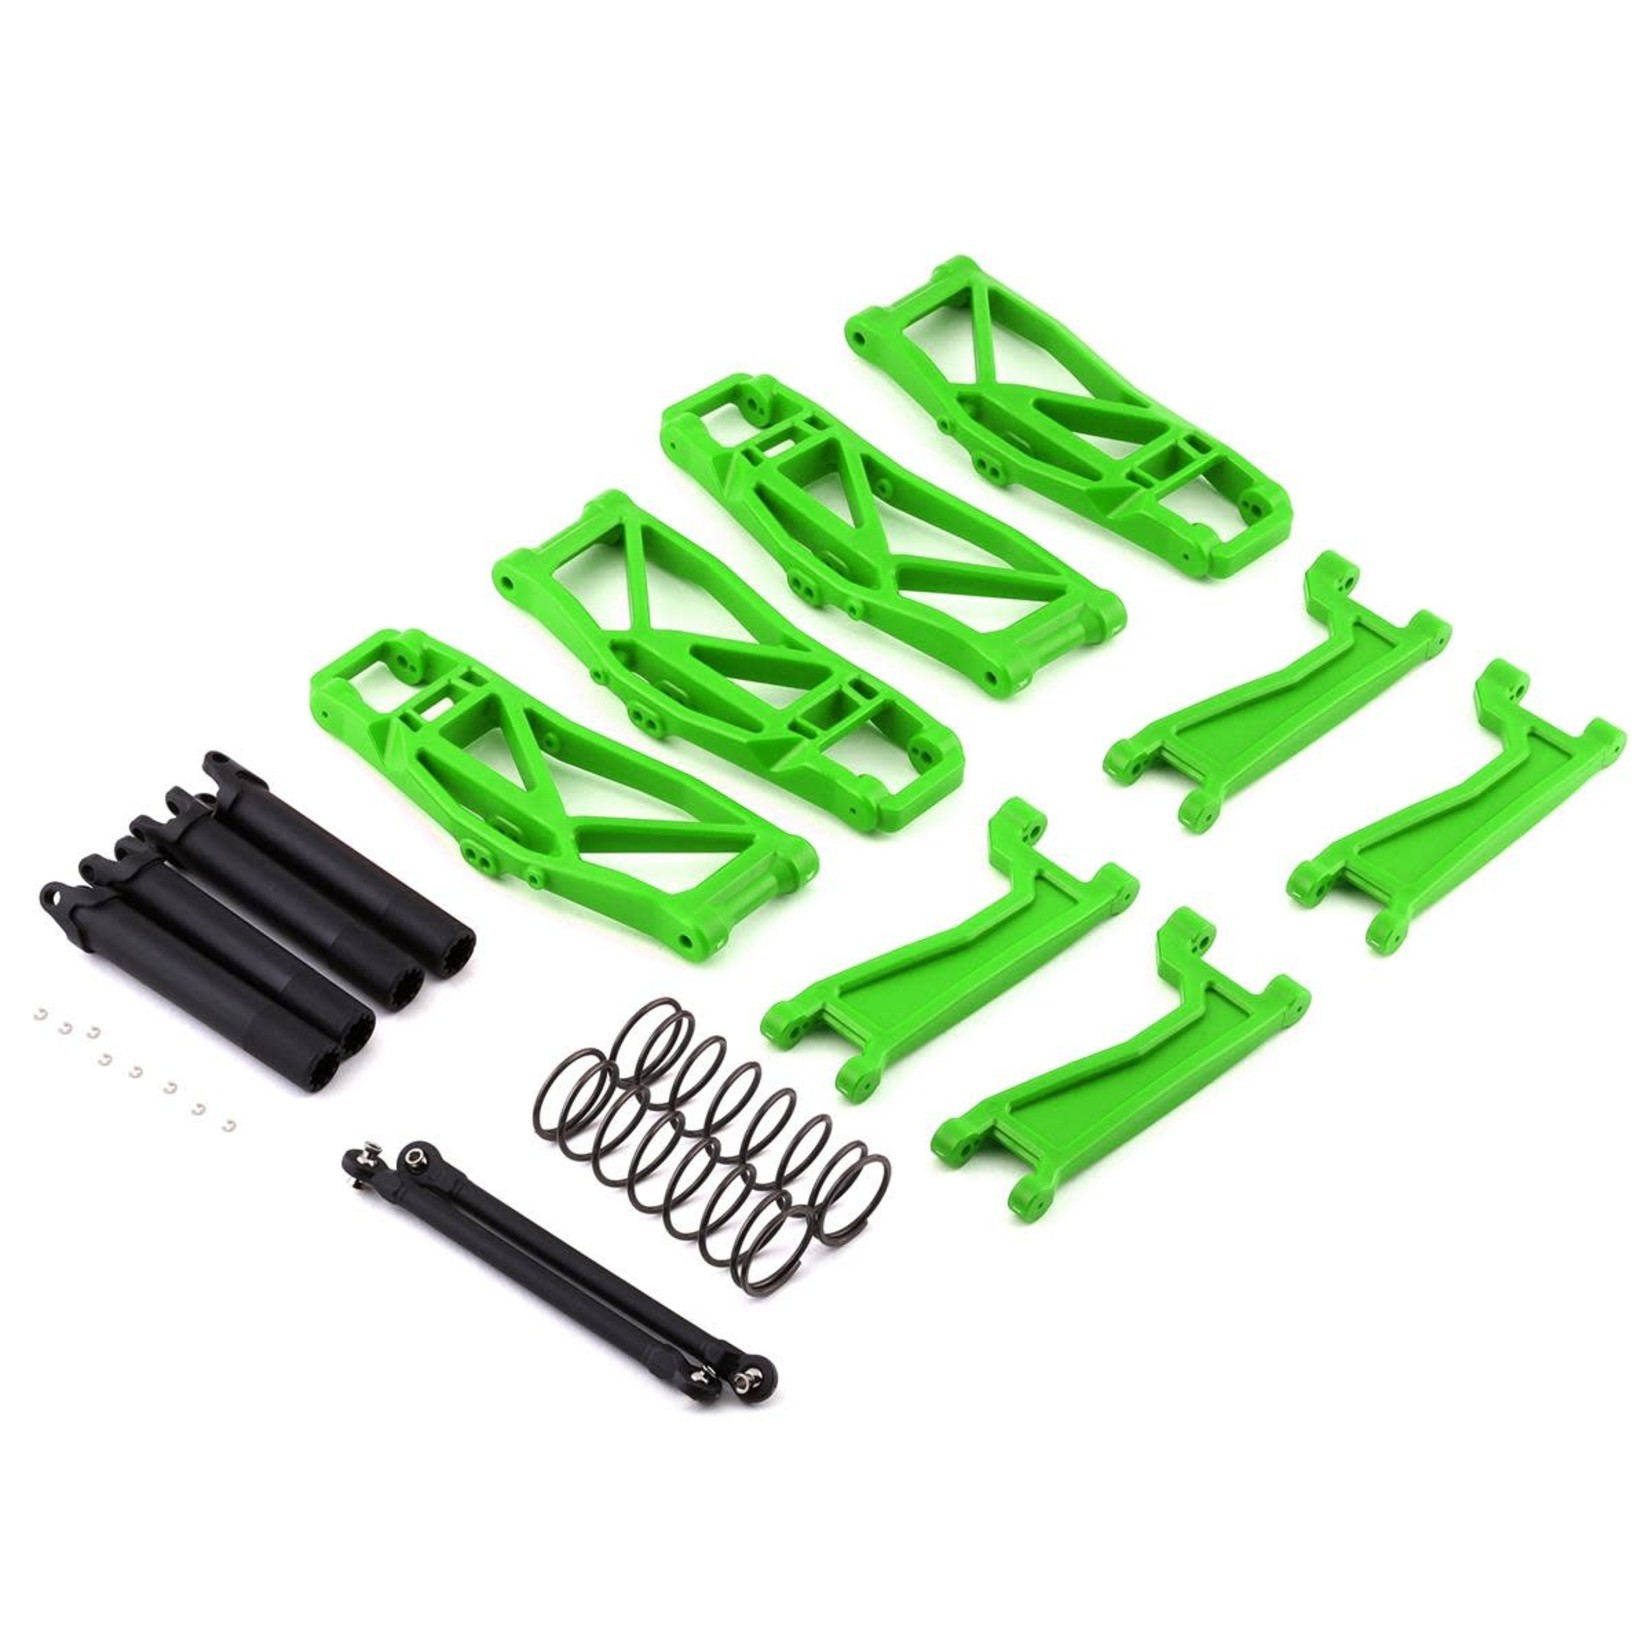 Traxxas Traxxas WideMaxx Suspension Kit (Green) #8995G